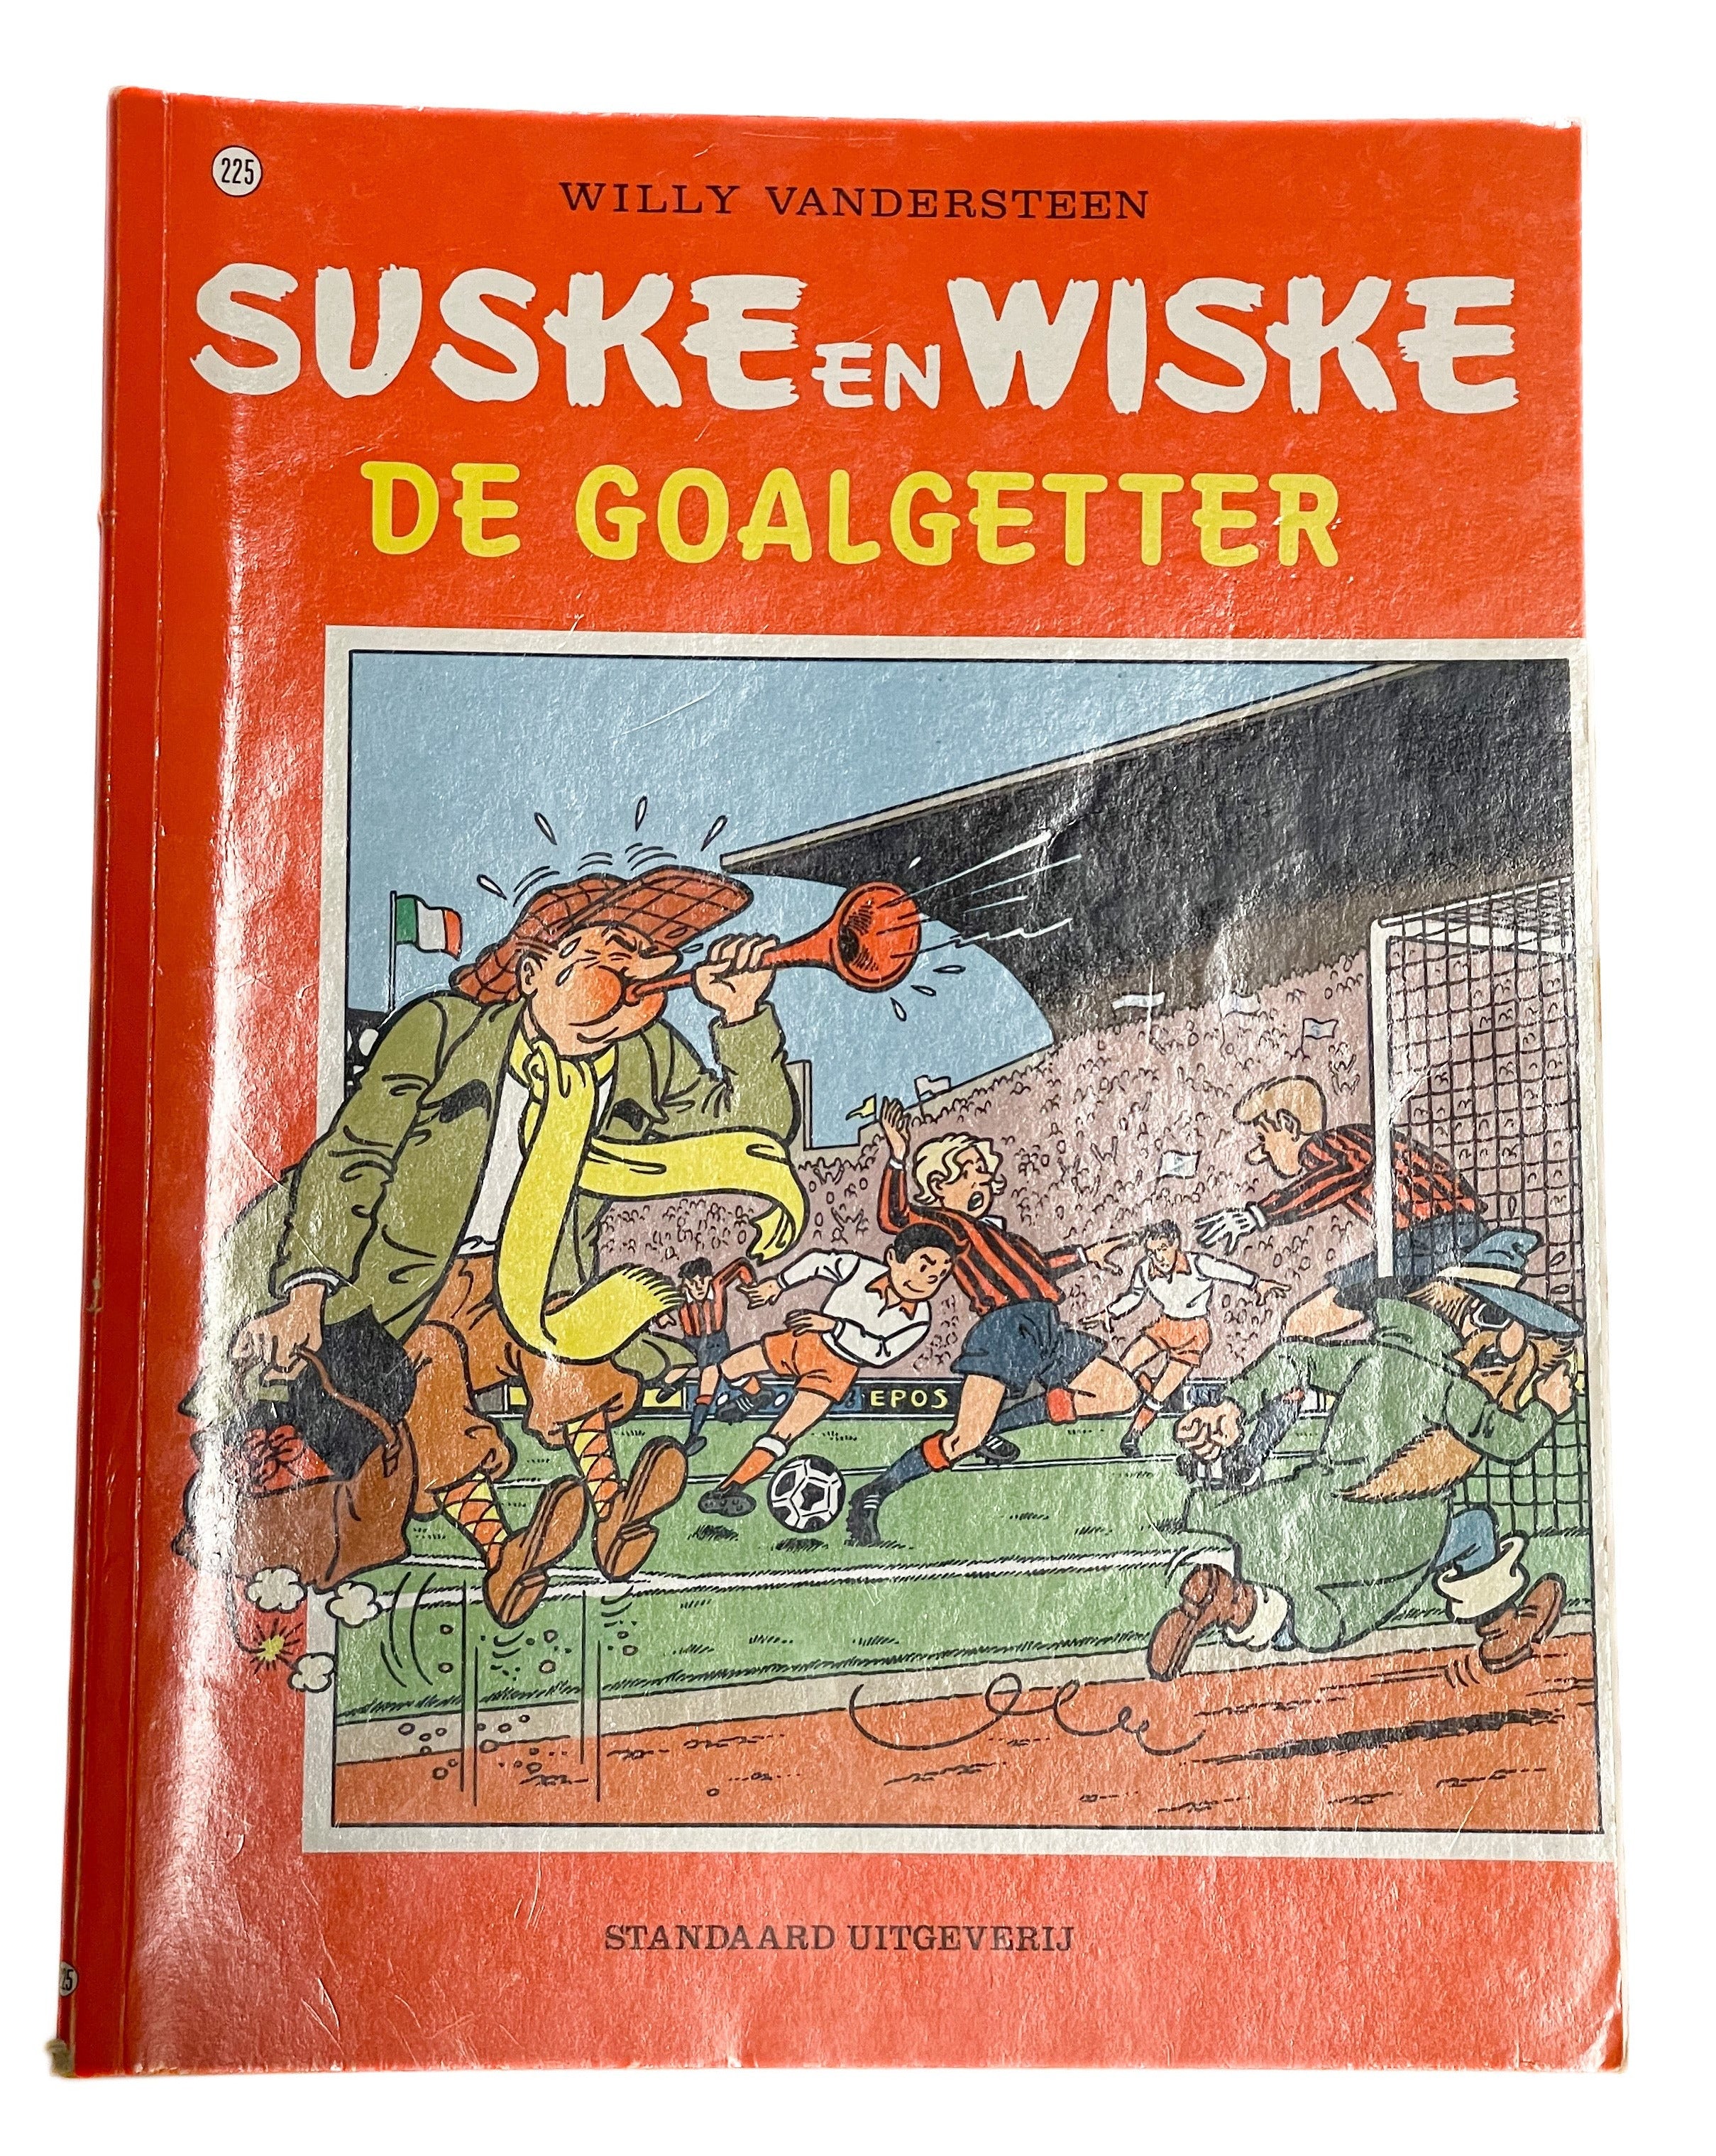 Suske en Wiske- De goalgetter nummer 225 1/9/90